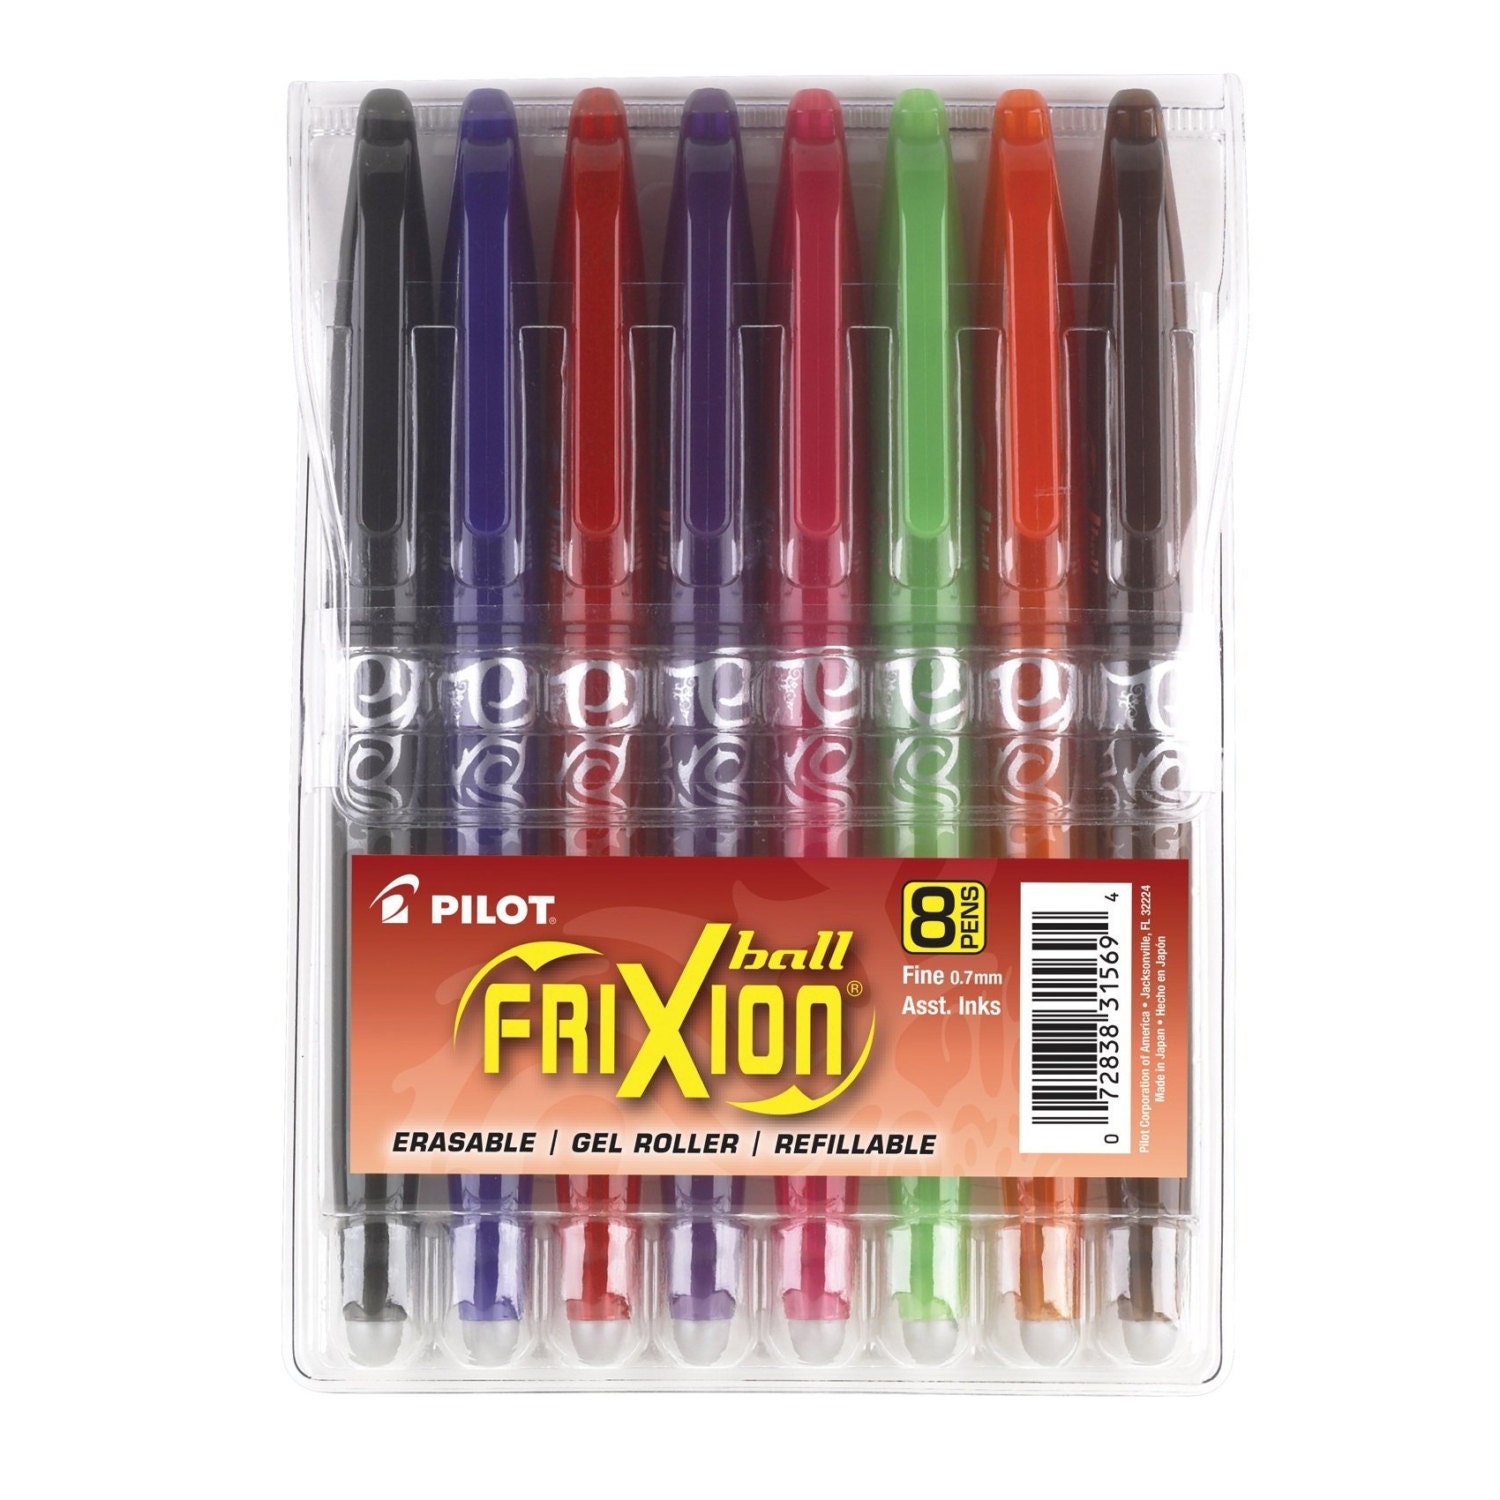 24 Pilot Frixion Erasable Markers, 24 Colors Pilot Frixion Colors